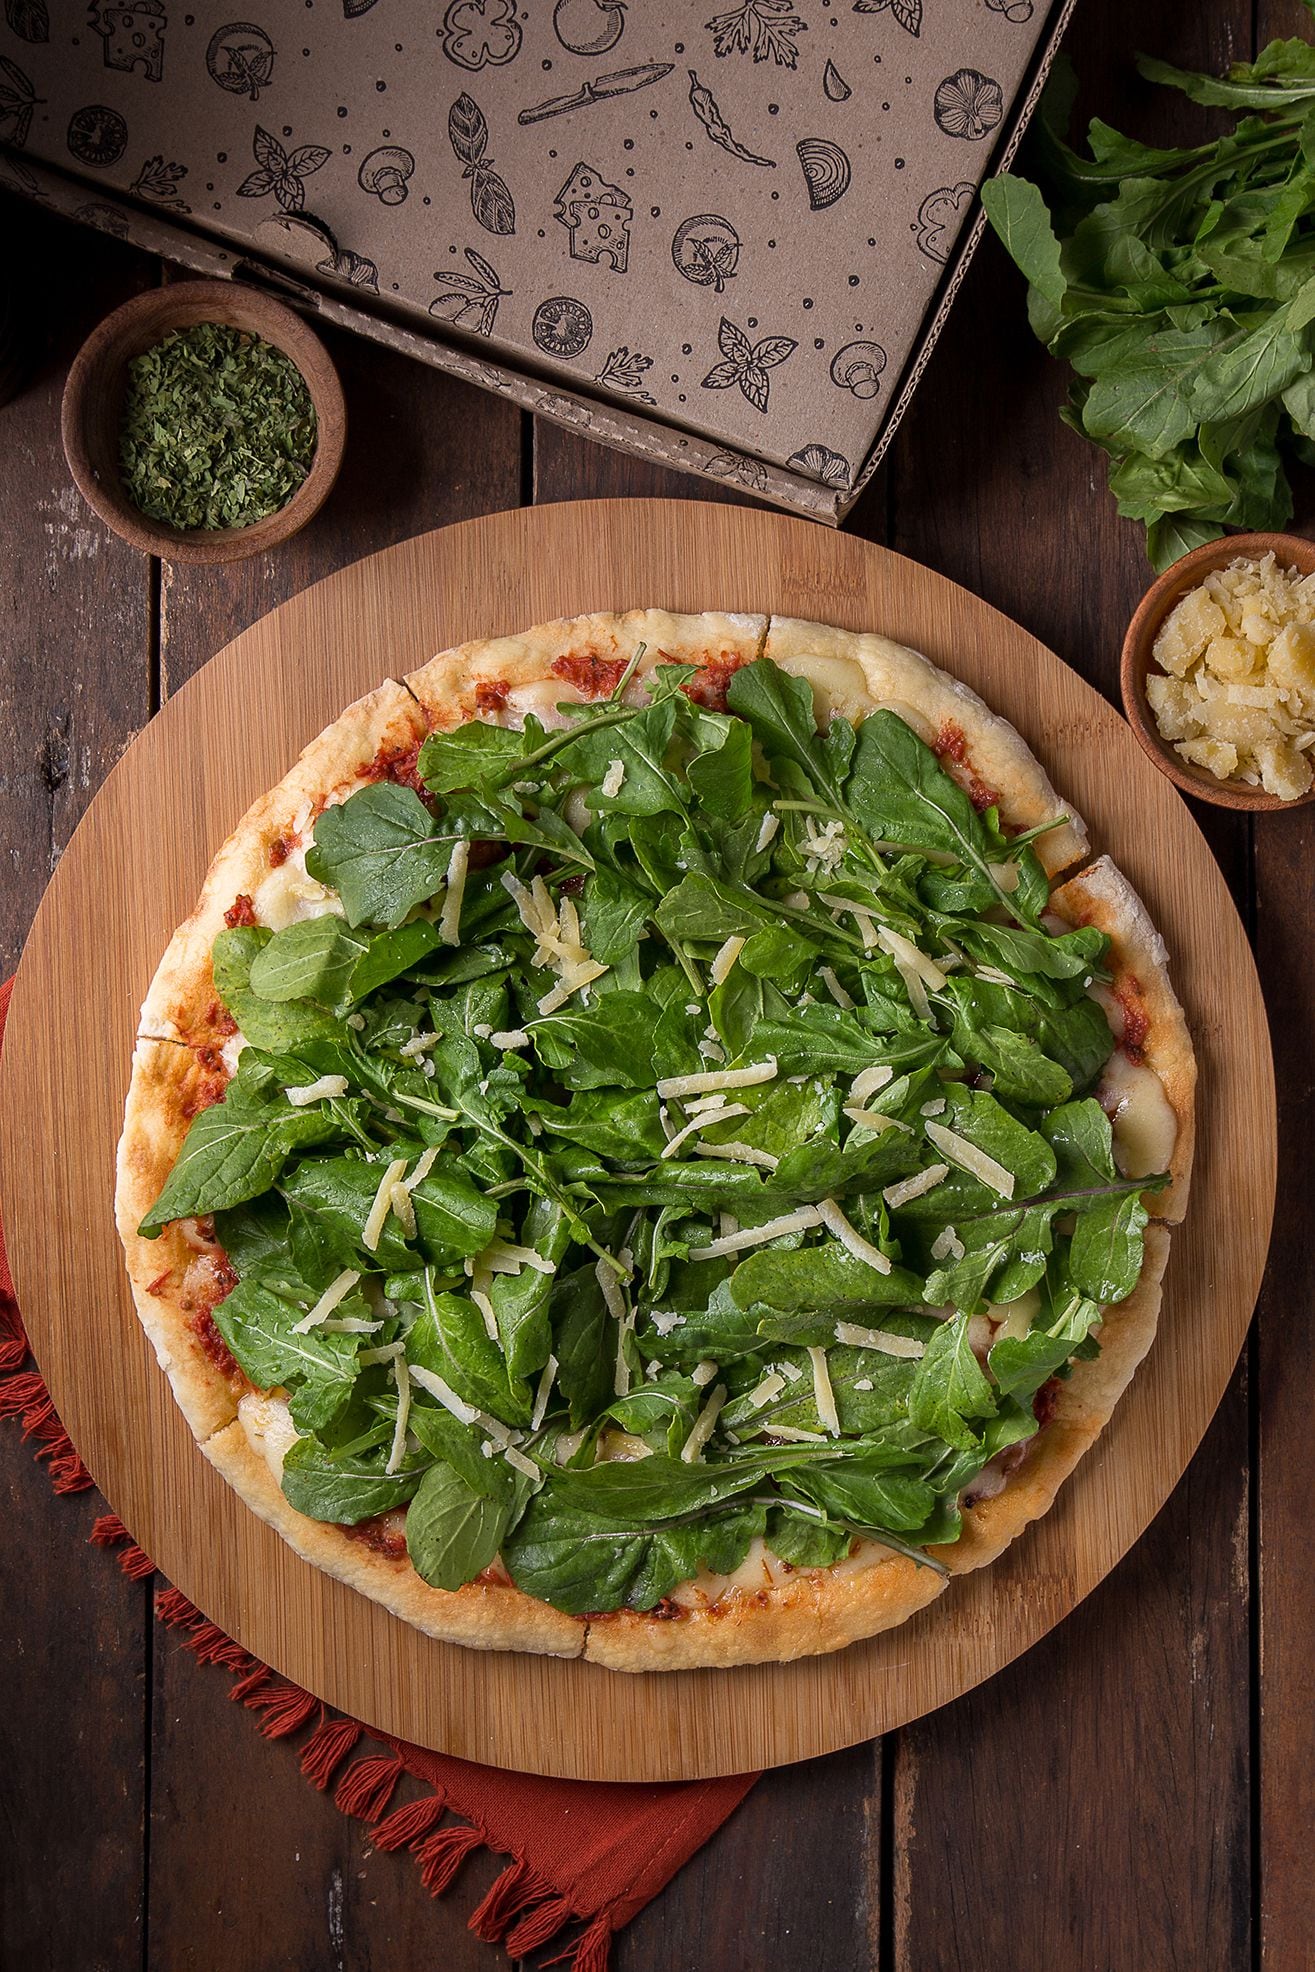 La propuesta de pizzas artesanales en formato “low cost” sumó a su menú habitual de 8 sabores libres de gluten (Tomasso)